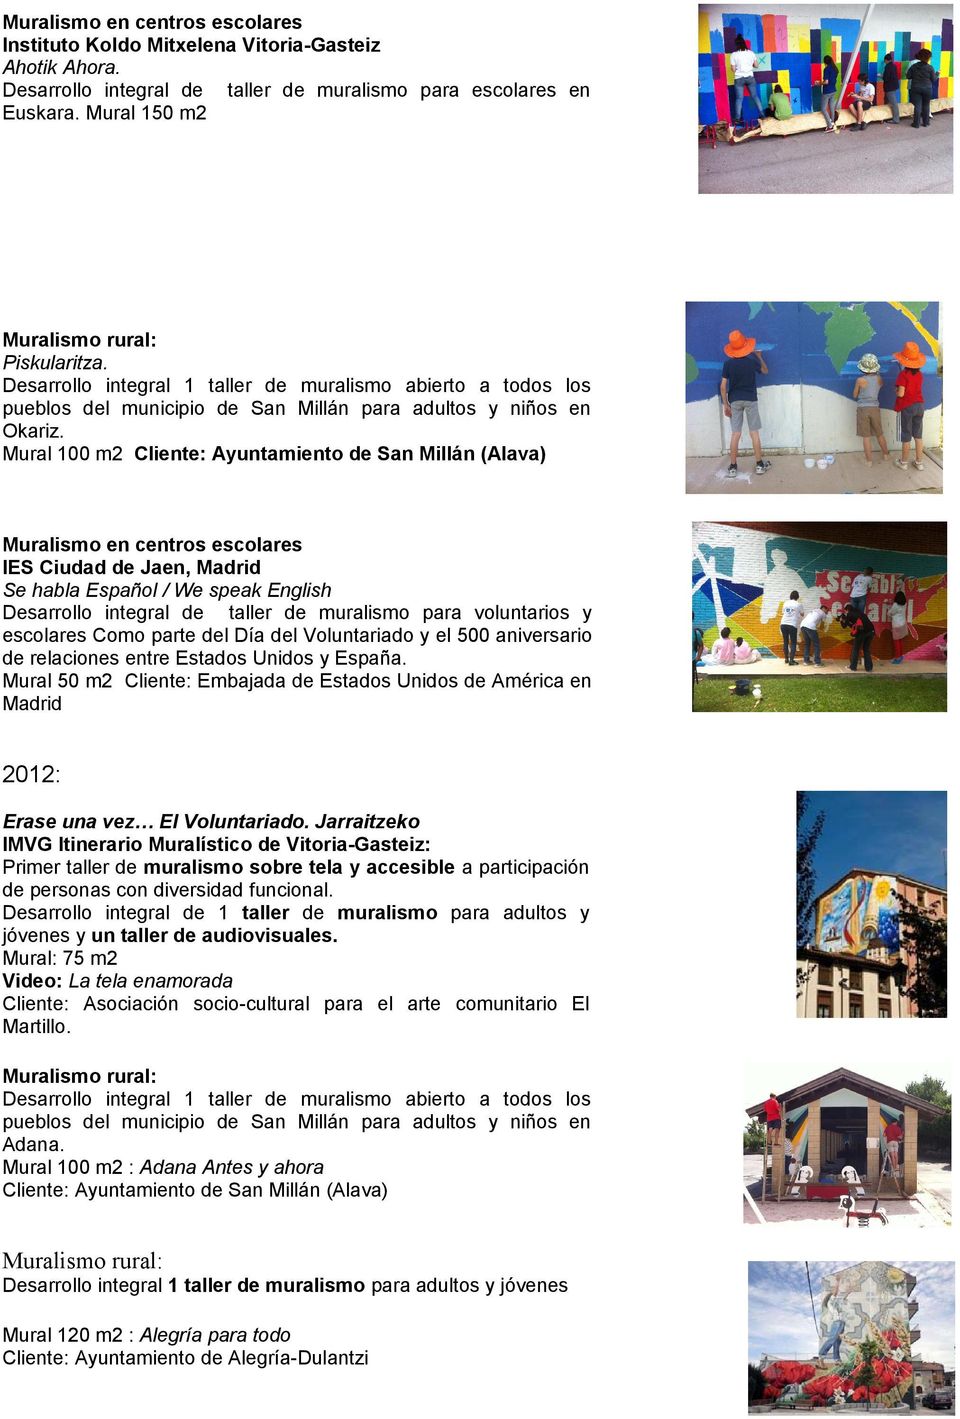 Mural 100 m2 Cliente: Ayuntamiento de San Millán (Alava) Muralismo en centros escolares IES Ciudad de Jaen, Madrid Se habla Español / We speak English Desarrollo integral de taller de muralismo para